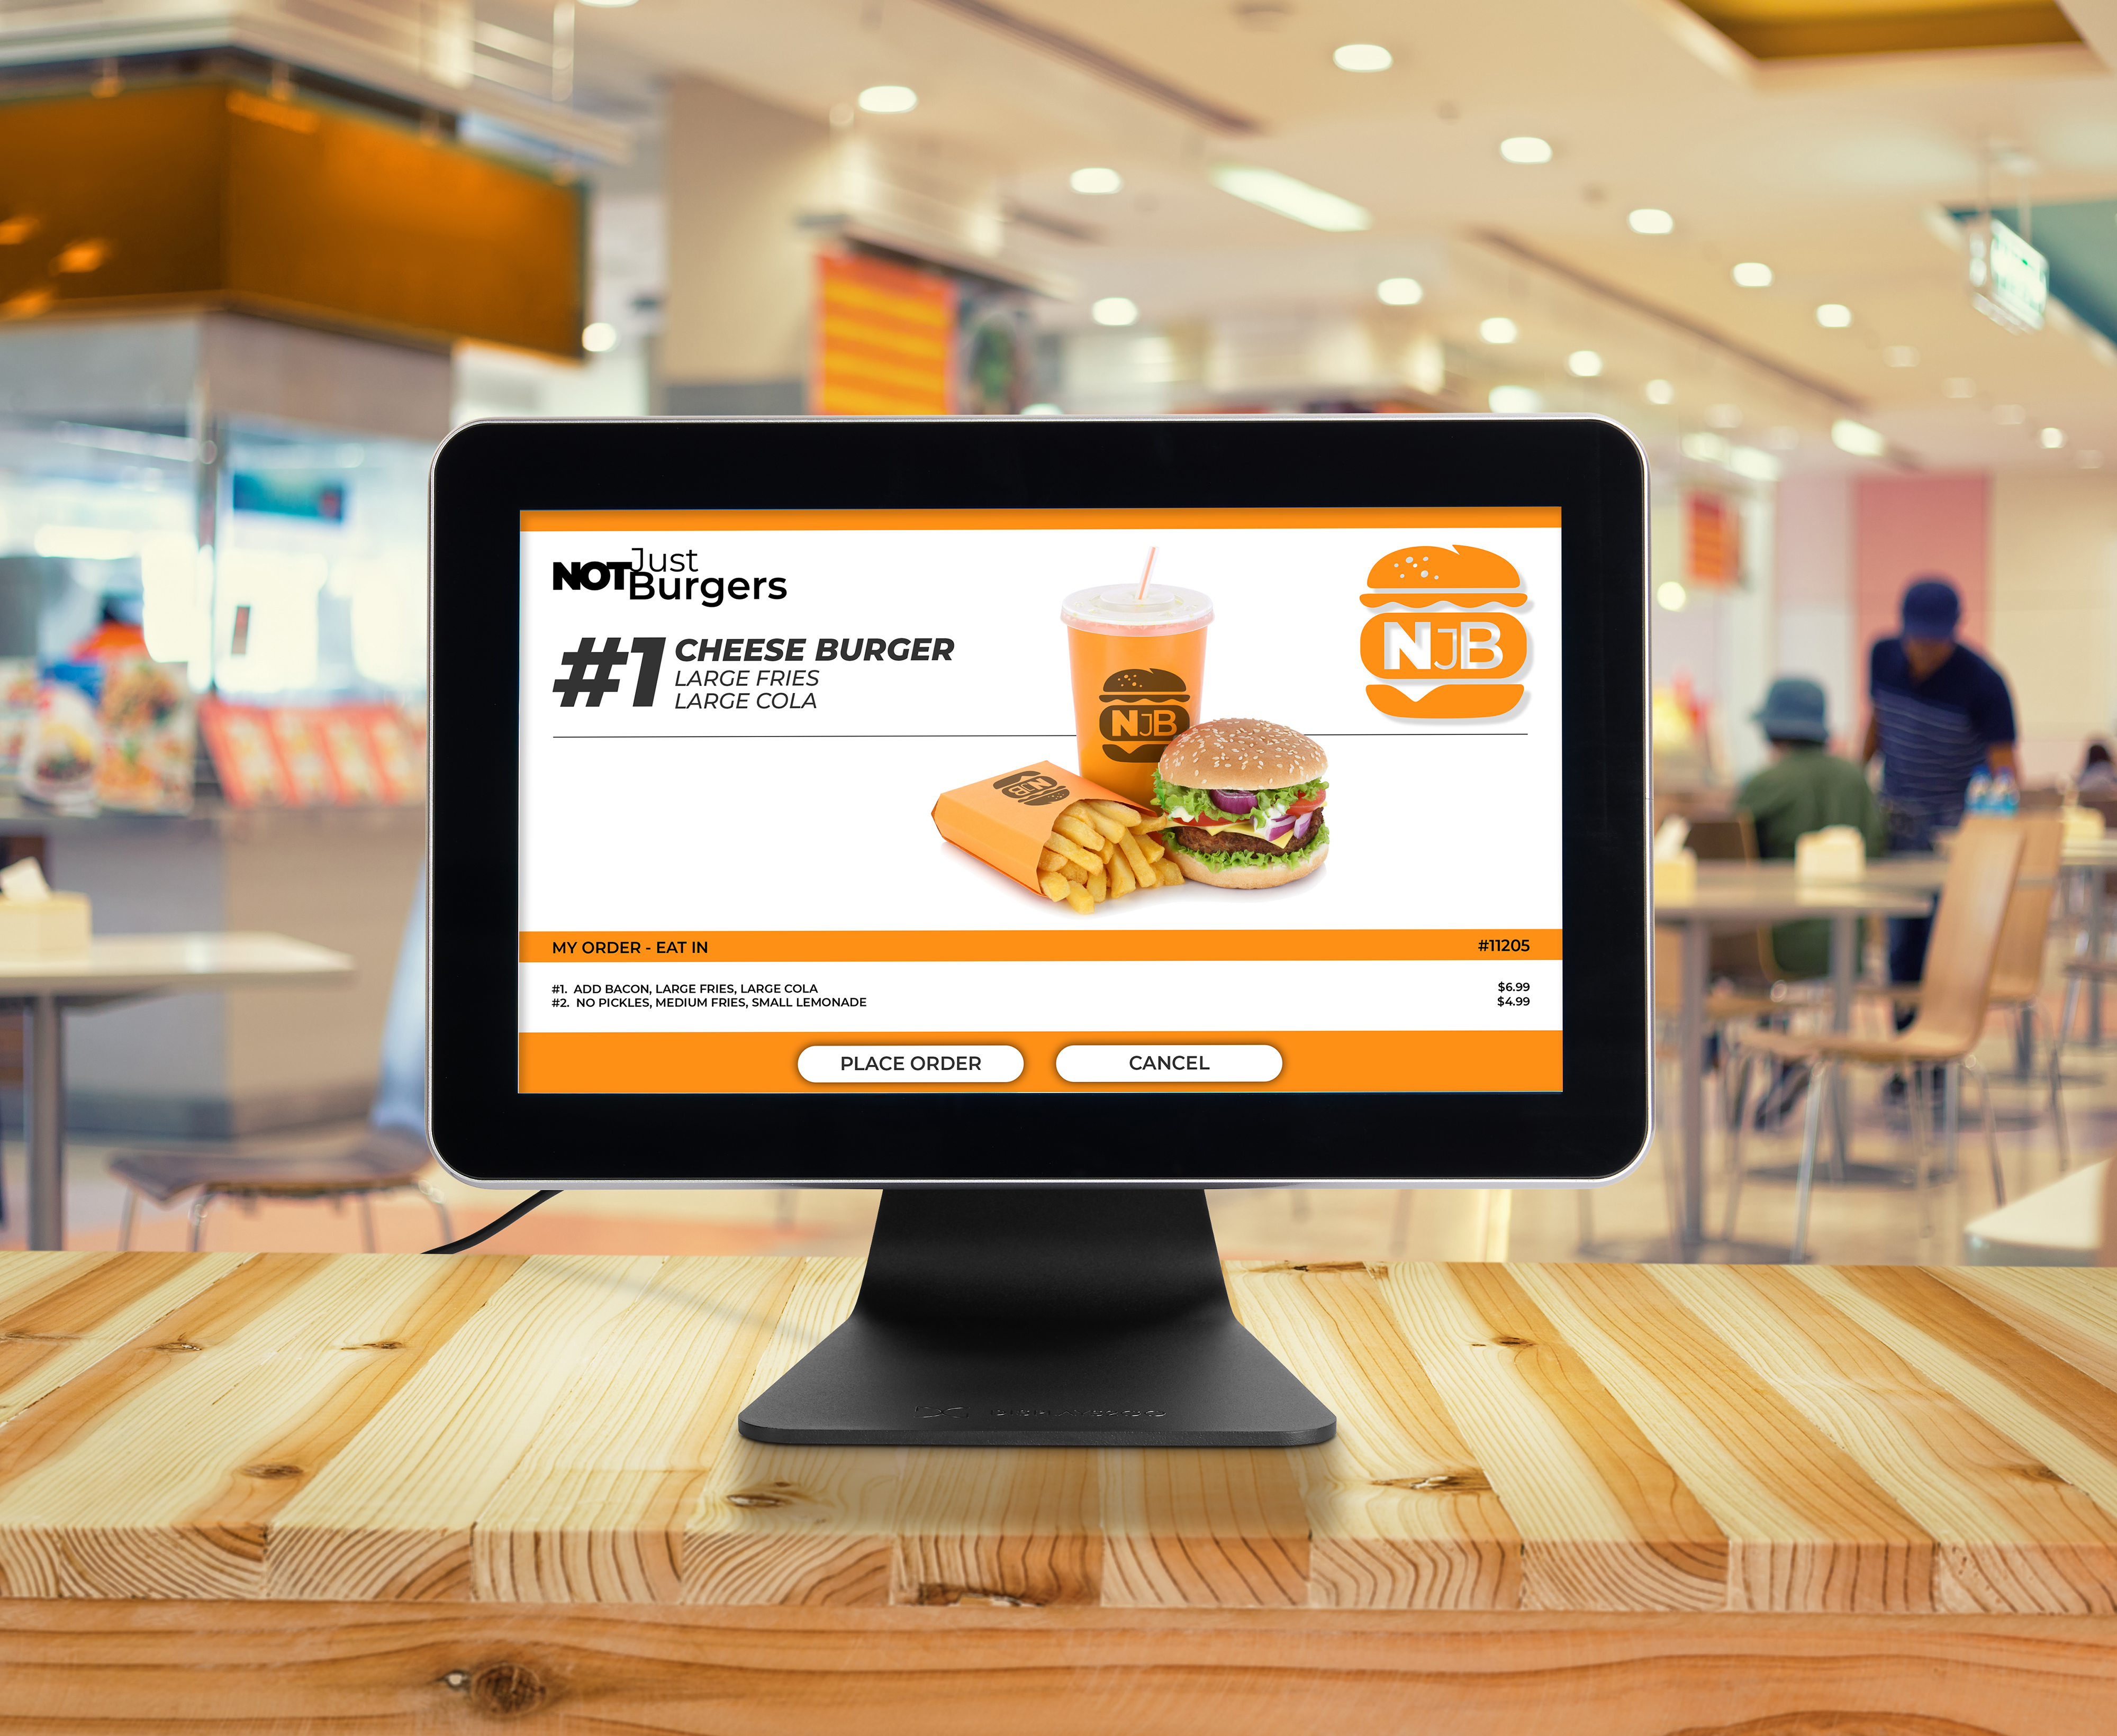  countertop digital kiosks for menus and restaurants are versatile